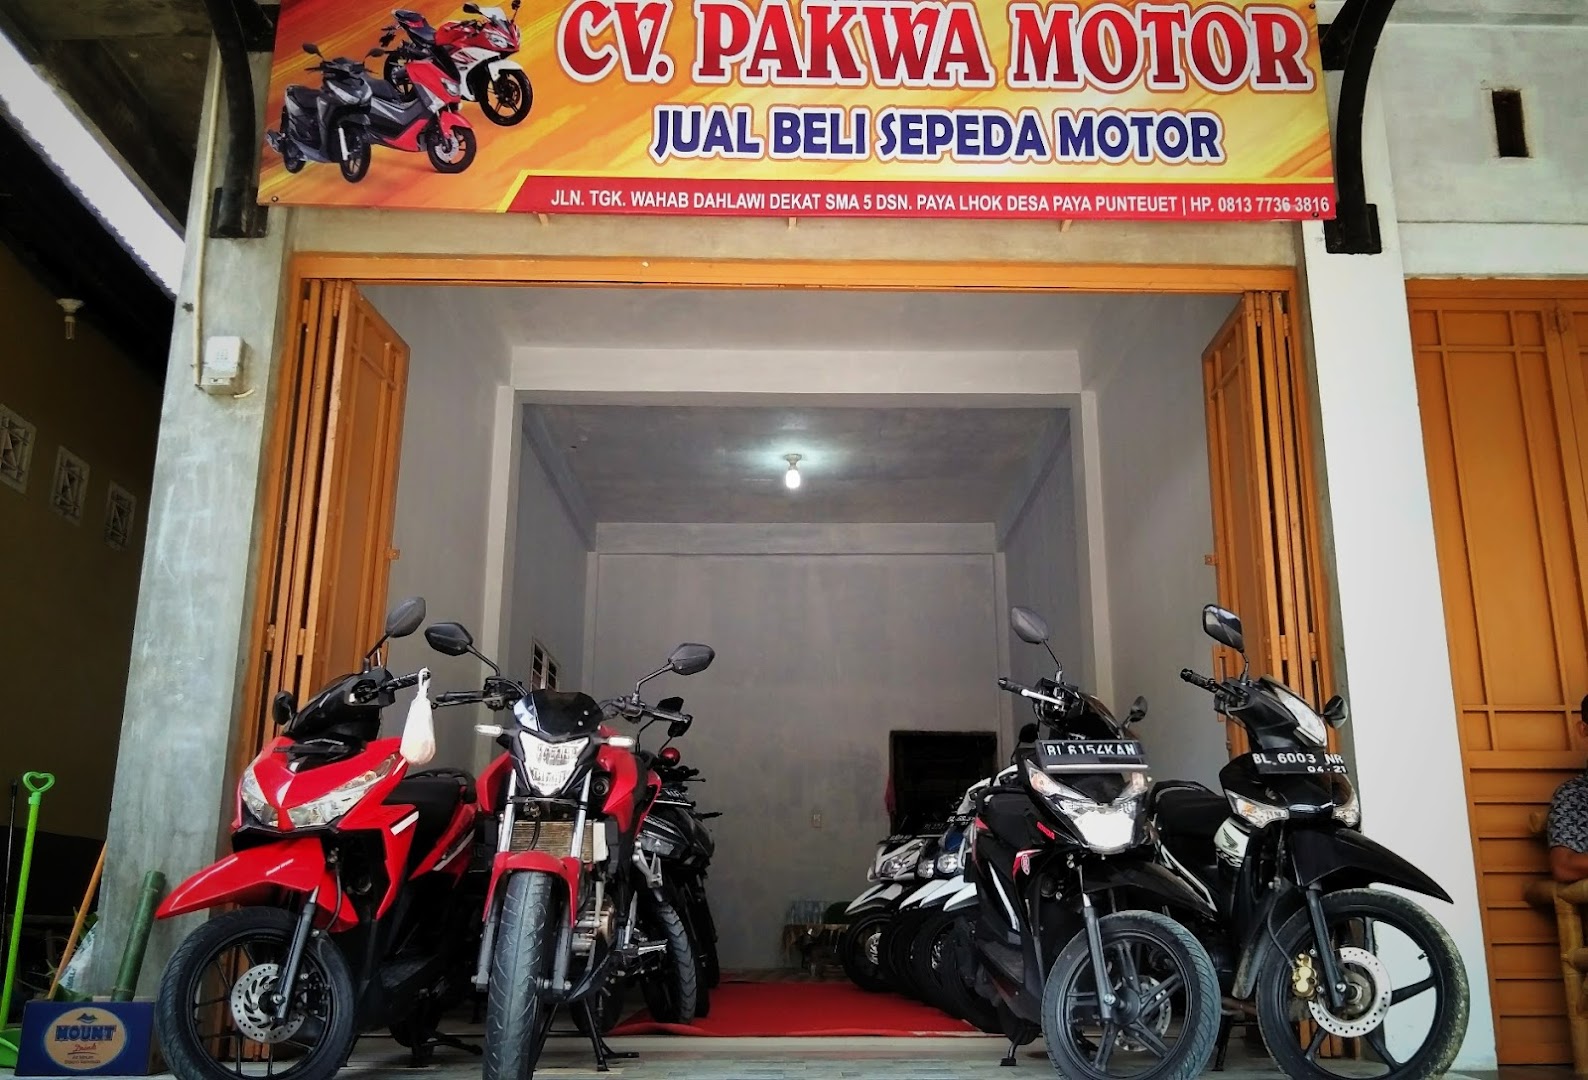 Cv. Pak Wa Motor Photo